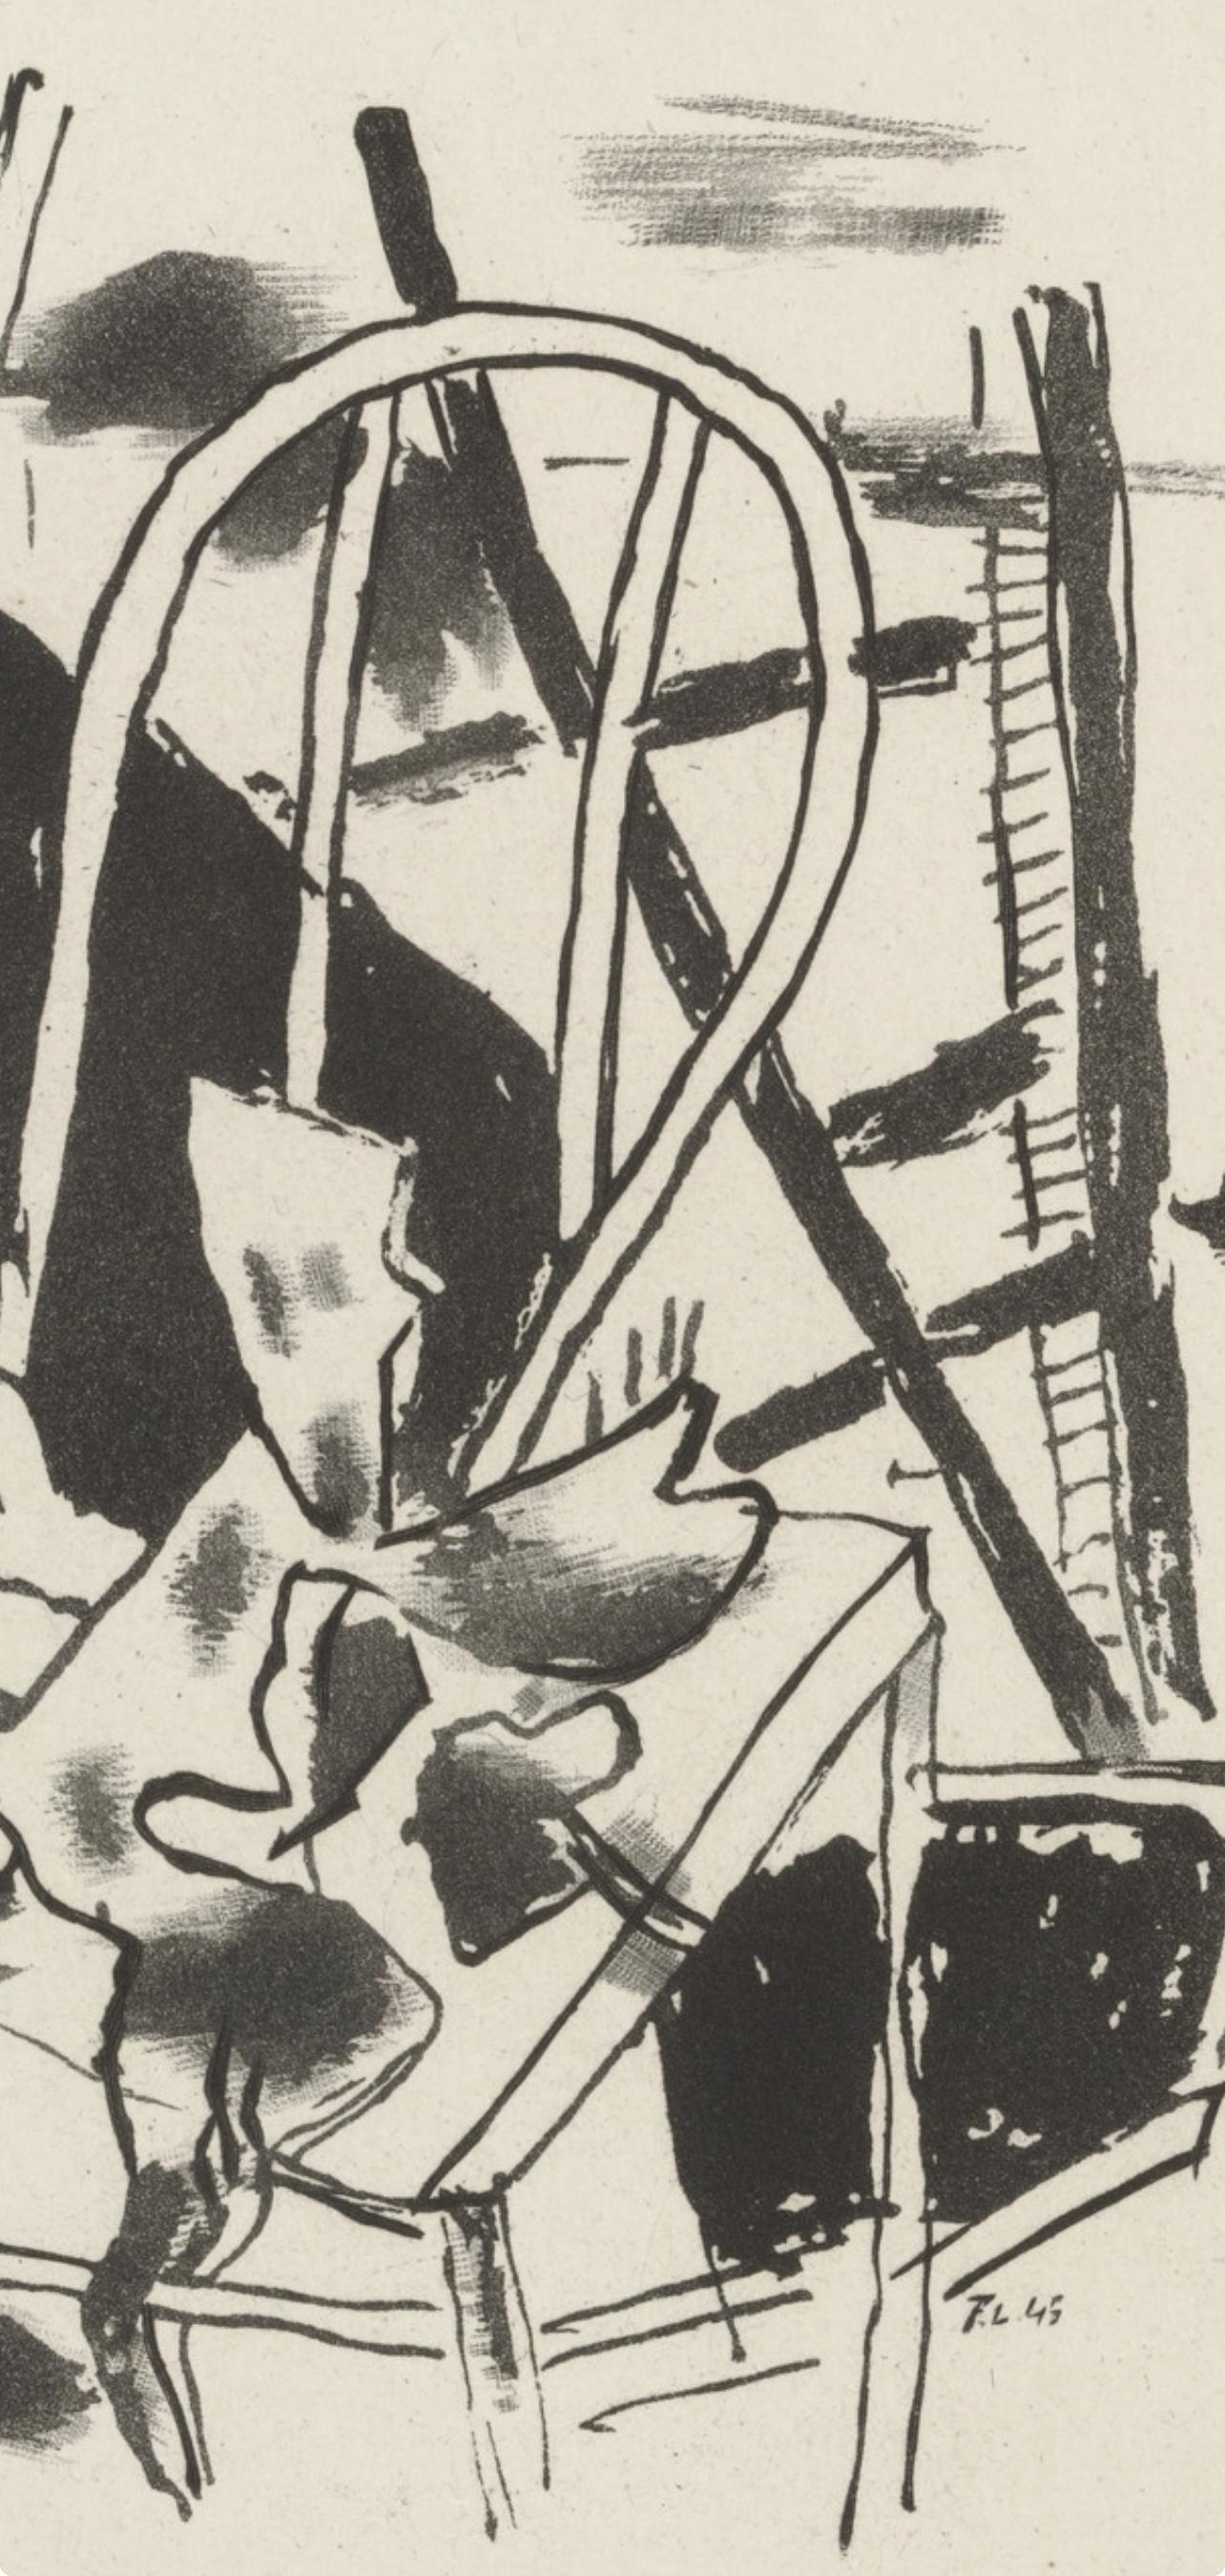 Léger, Composition, Du cubisme (after) - Print by Fernand Léger